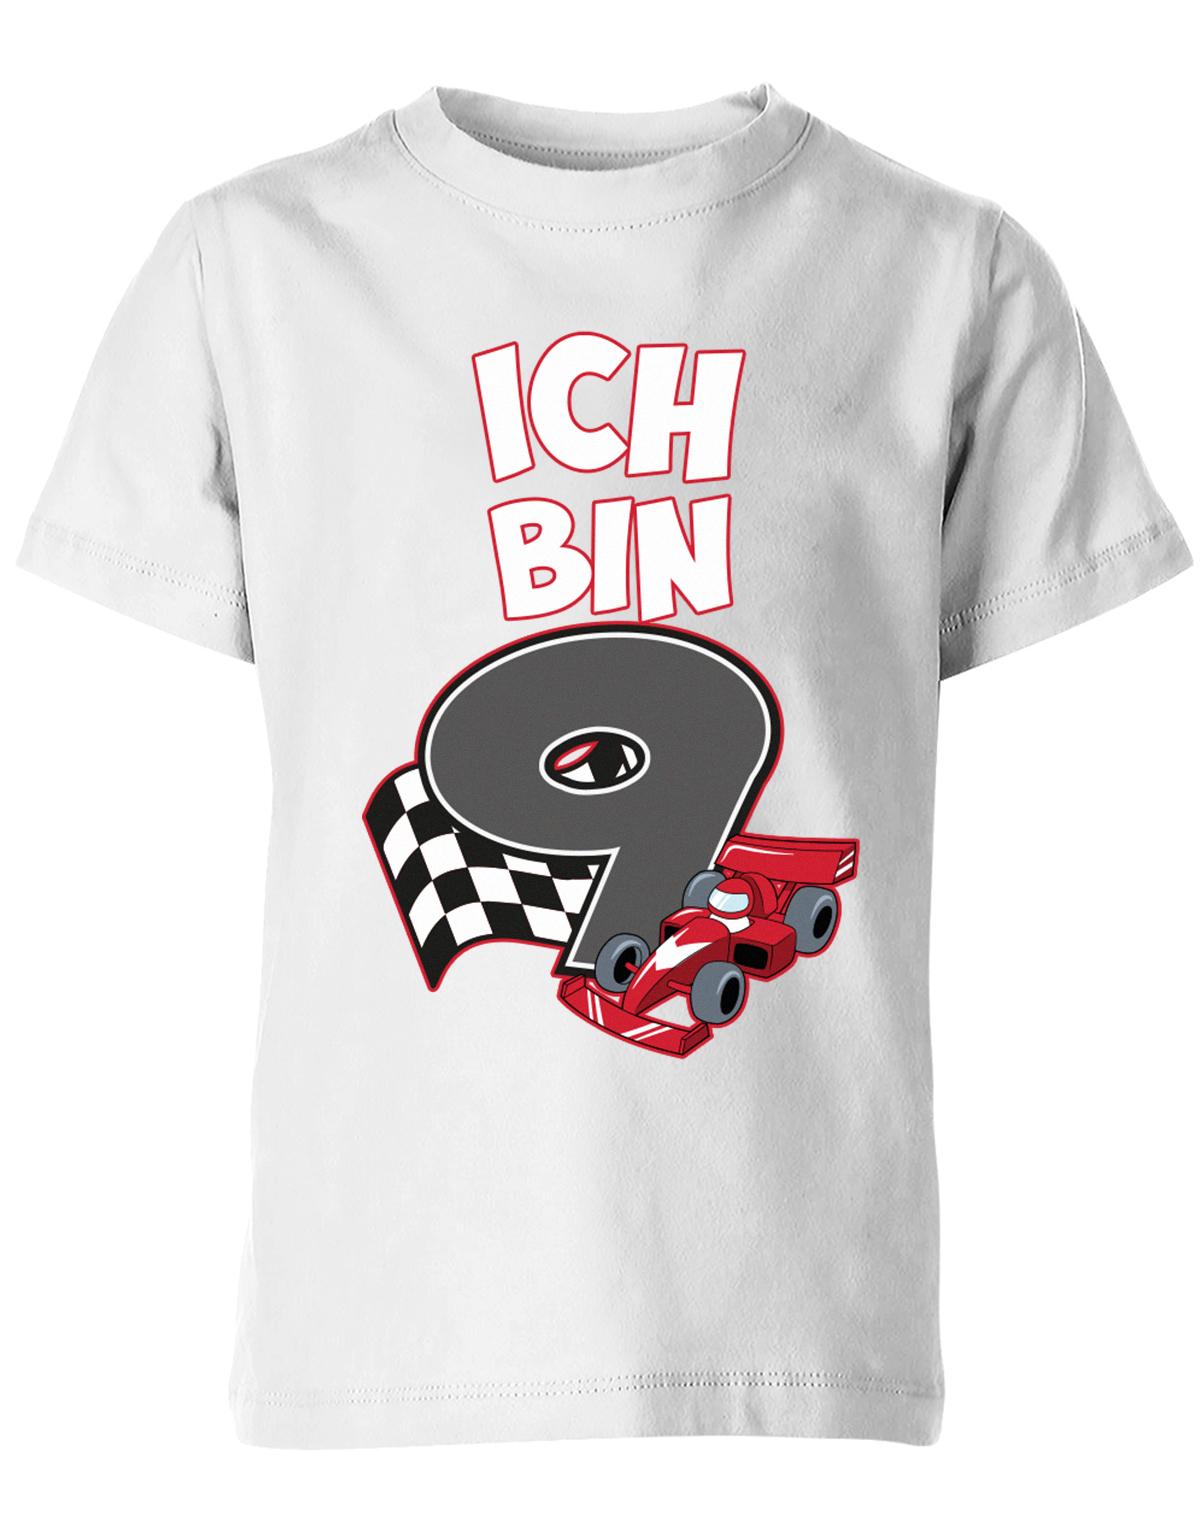 ich-bin-9-autorennen-rennwagen-geburtstag-rennfahrer-kinder-shirt-weiss